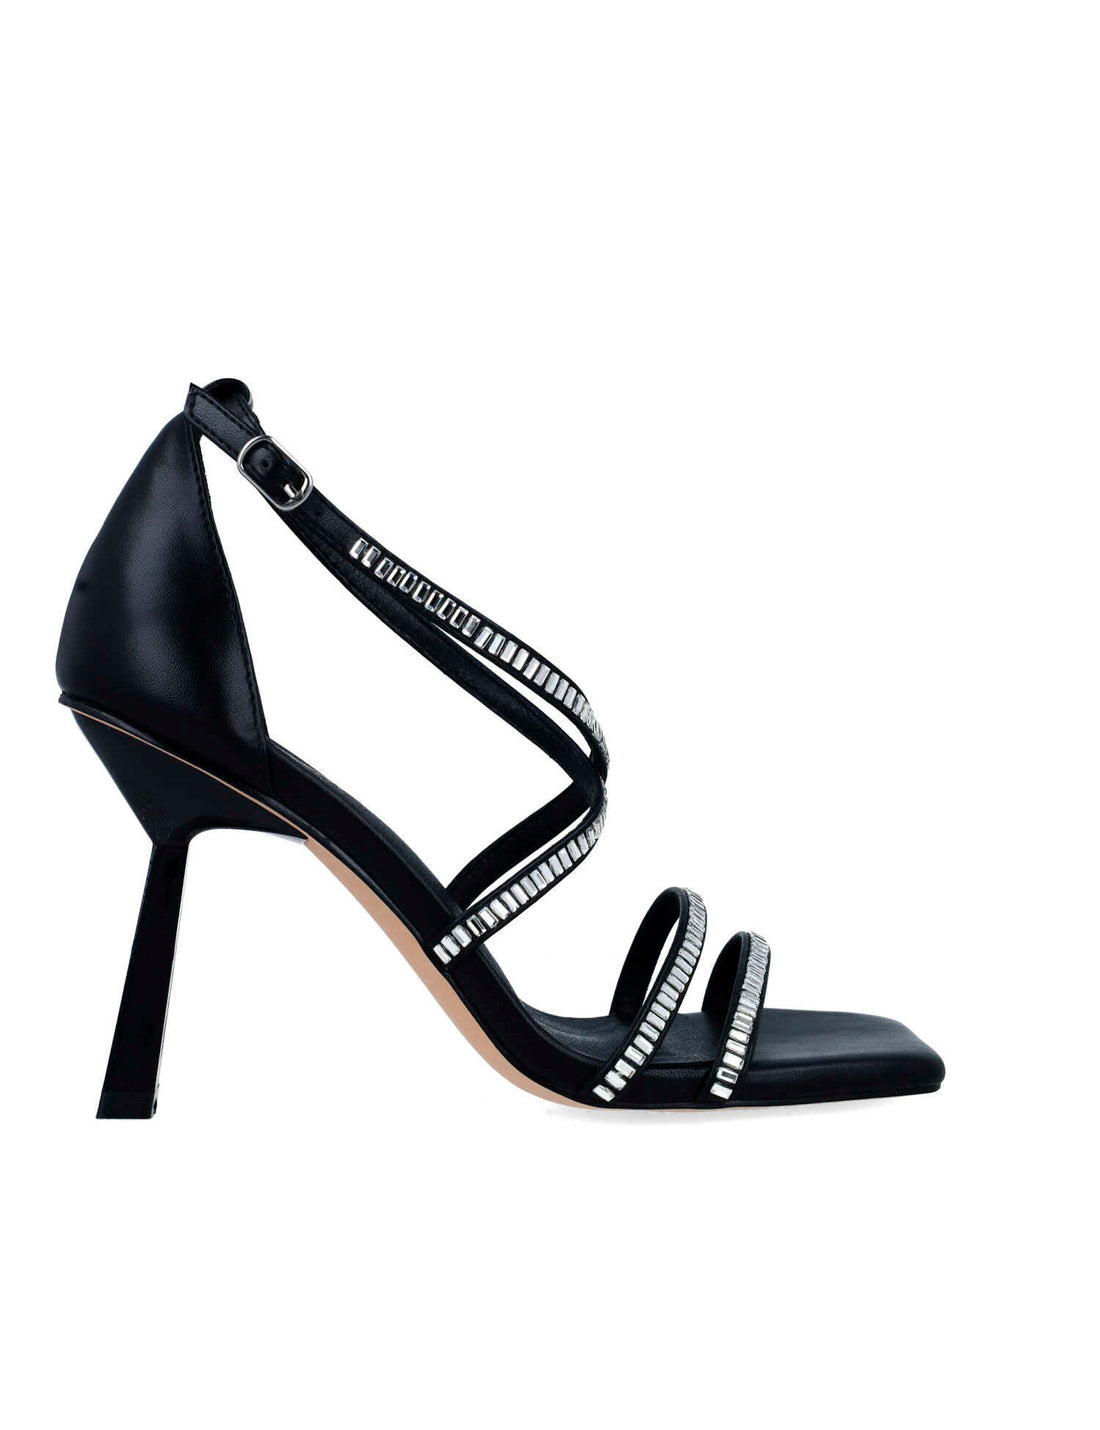 Black High-Heel Sandals With Embellished Straps_24775_01_01